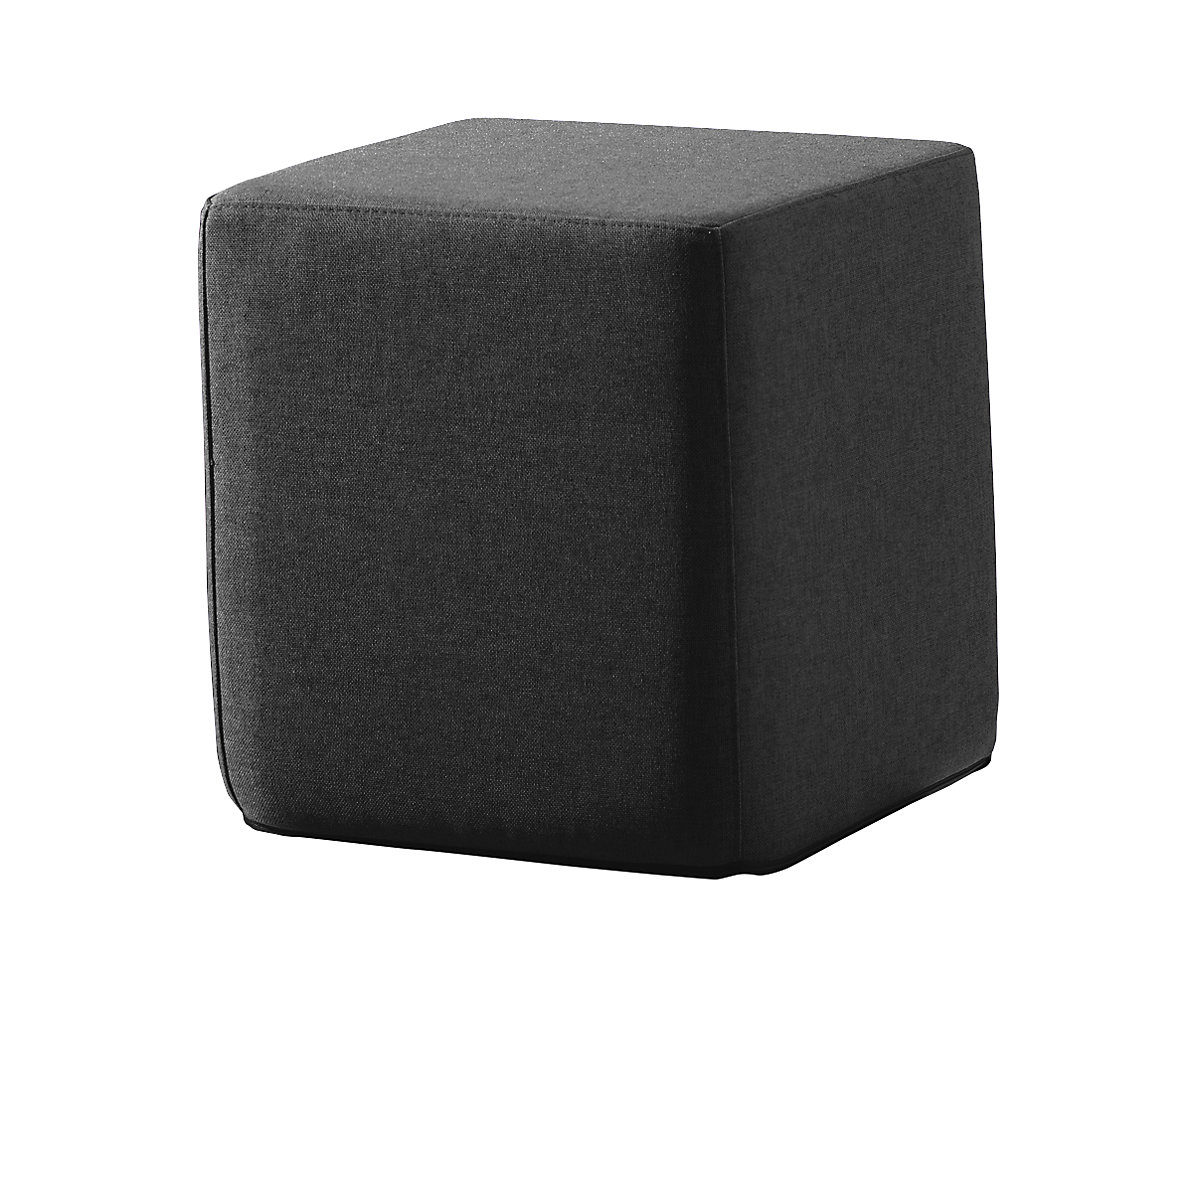 Kocka za sjedenje SITTING, VxŠxD 420 x 400 x 400 mm, u crnoj boji-4